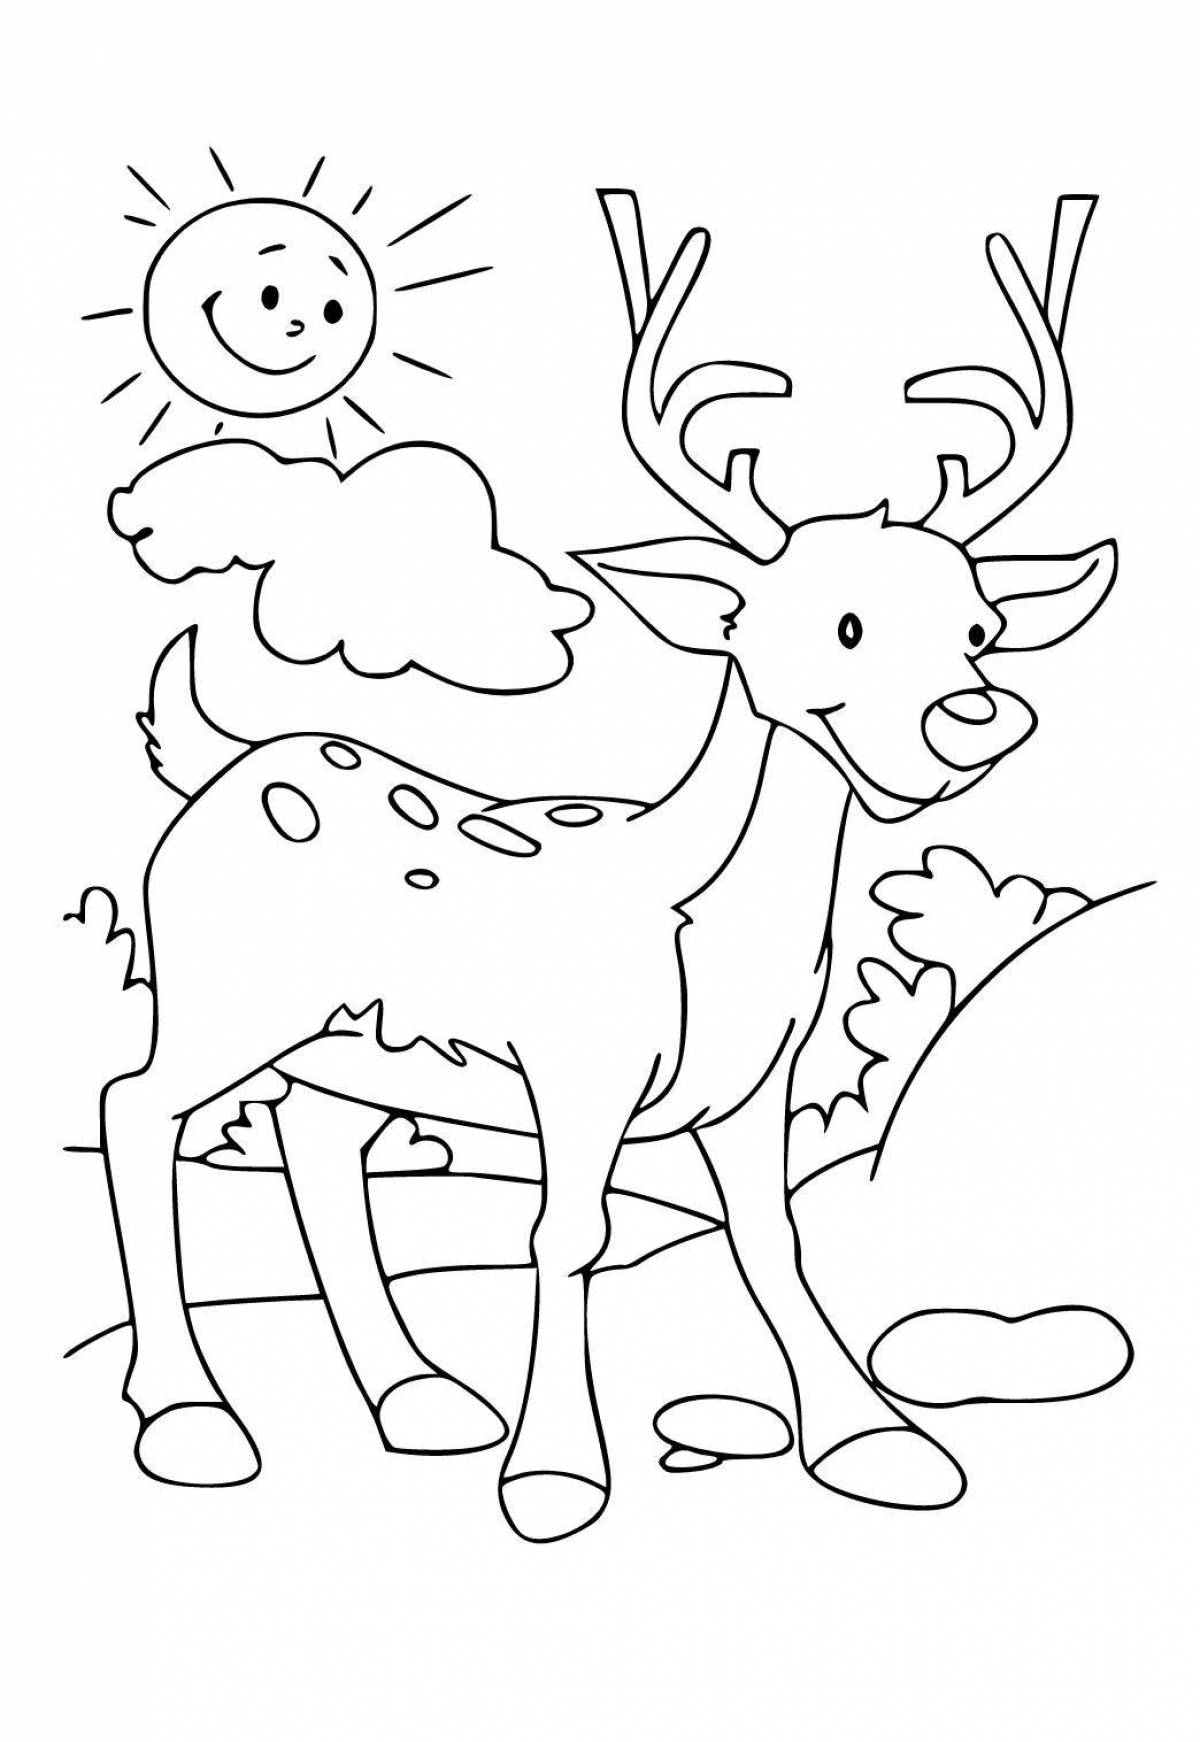 Фантастическая раскраска олень для детей 3-4 лет